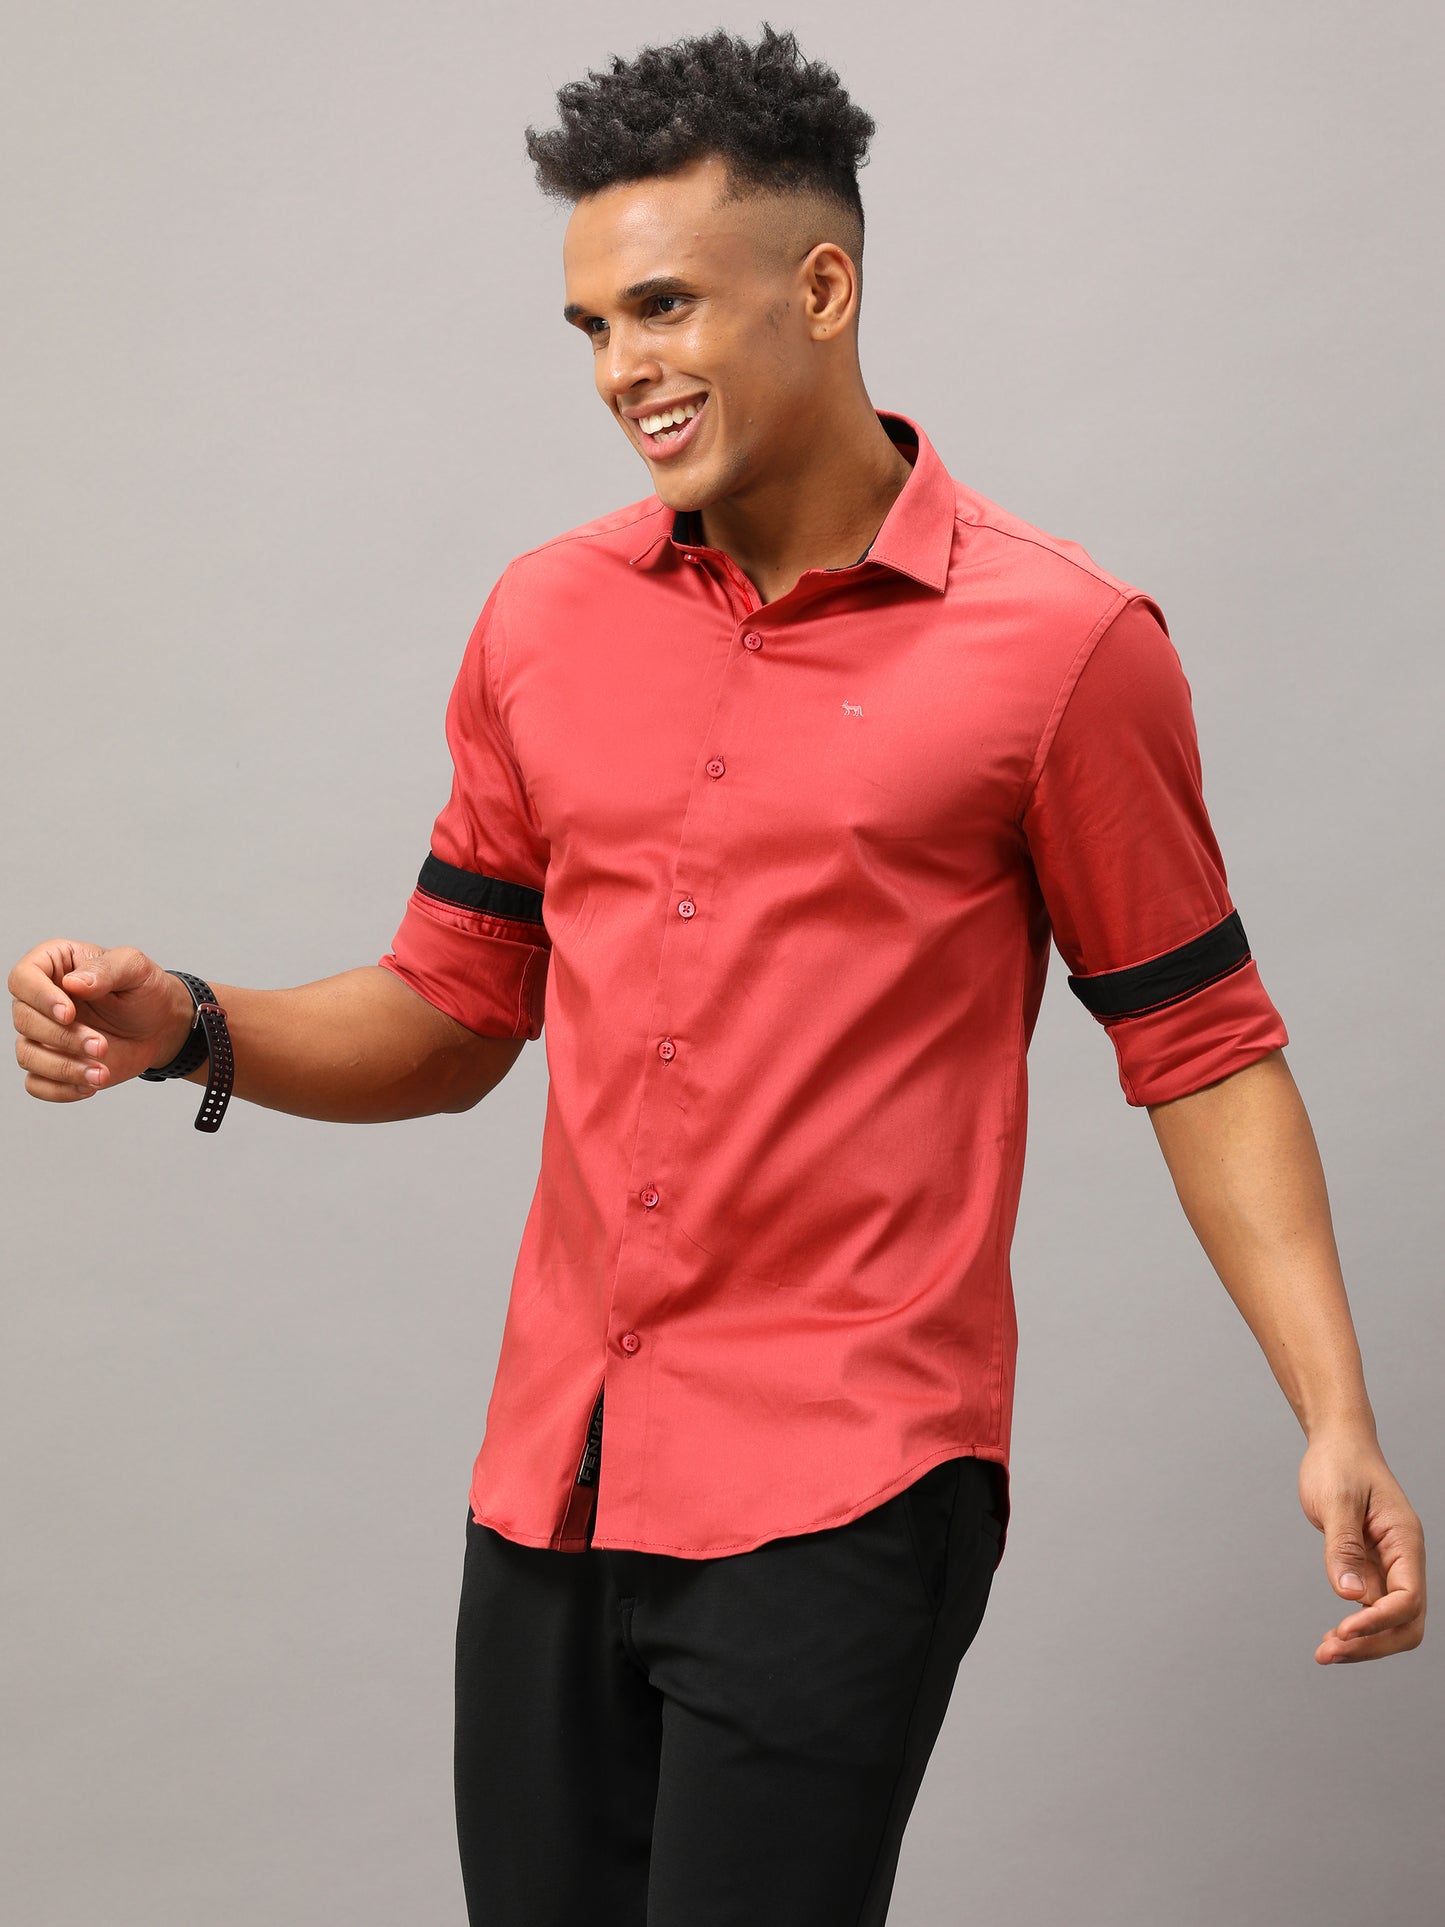 Plain Red shirt full sleeve